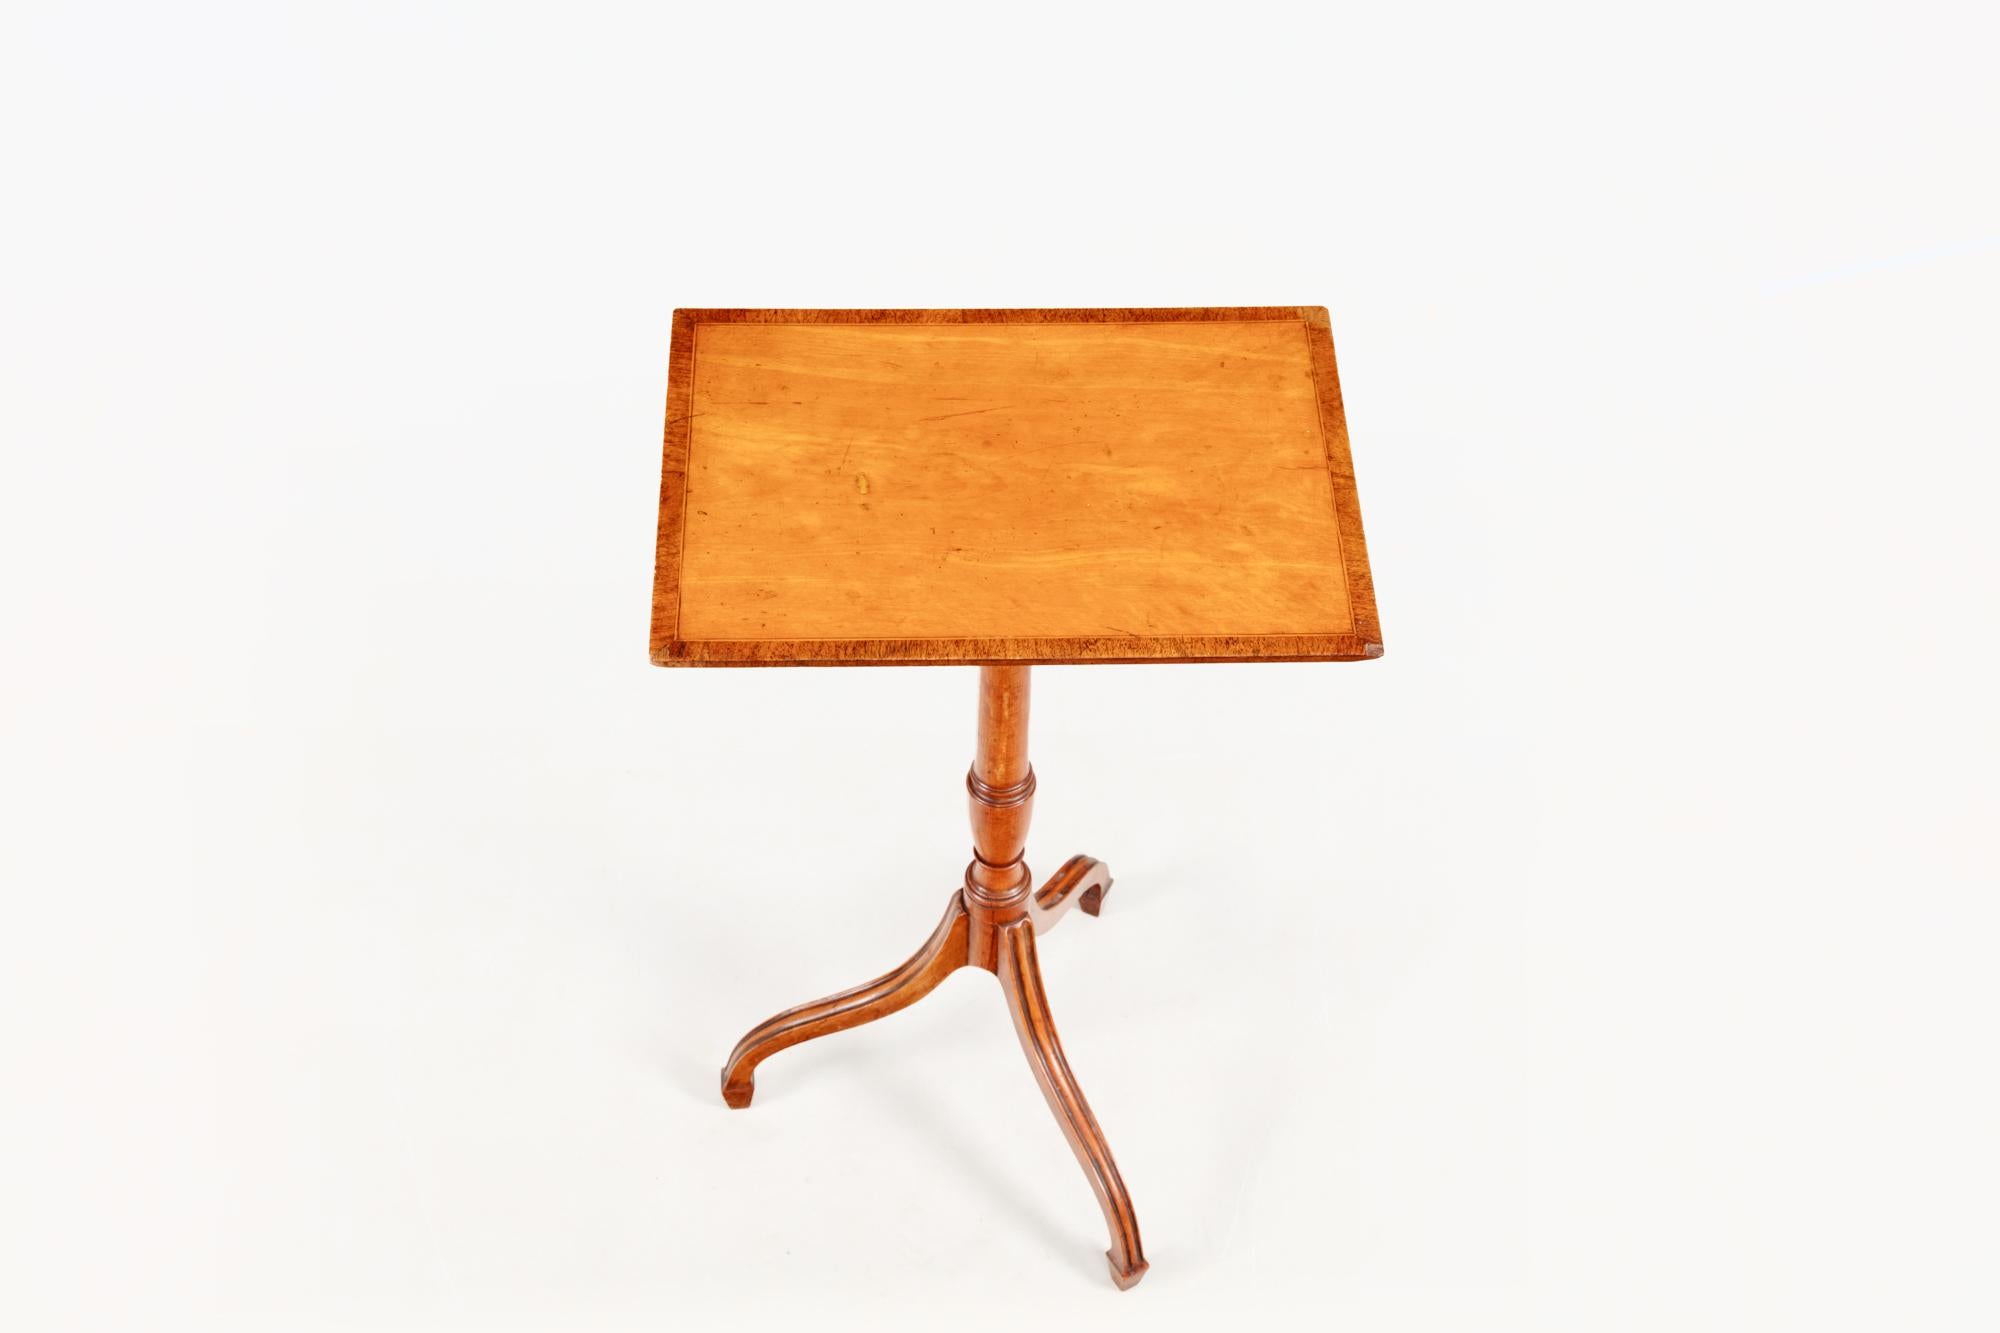 Regency-Weintisch aus dem frühen 19. Jahrhundert mit Dreibein. Die rechteckige Platte aus satiniertem Holz und Mahagoni mit Querbändern sitzt über einem gedrechselten Schaft, der in drei sich nach unten verjüngende Beine übergeht, die in einfachen